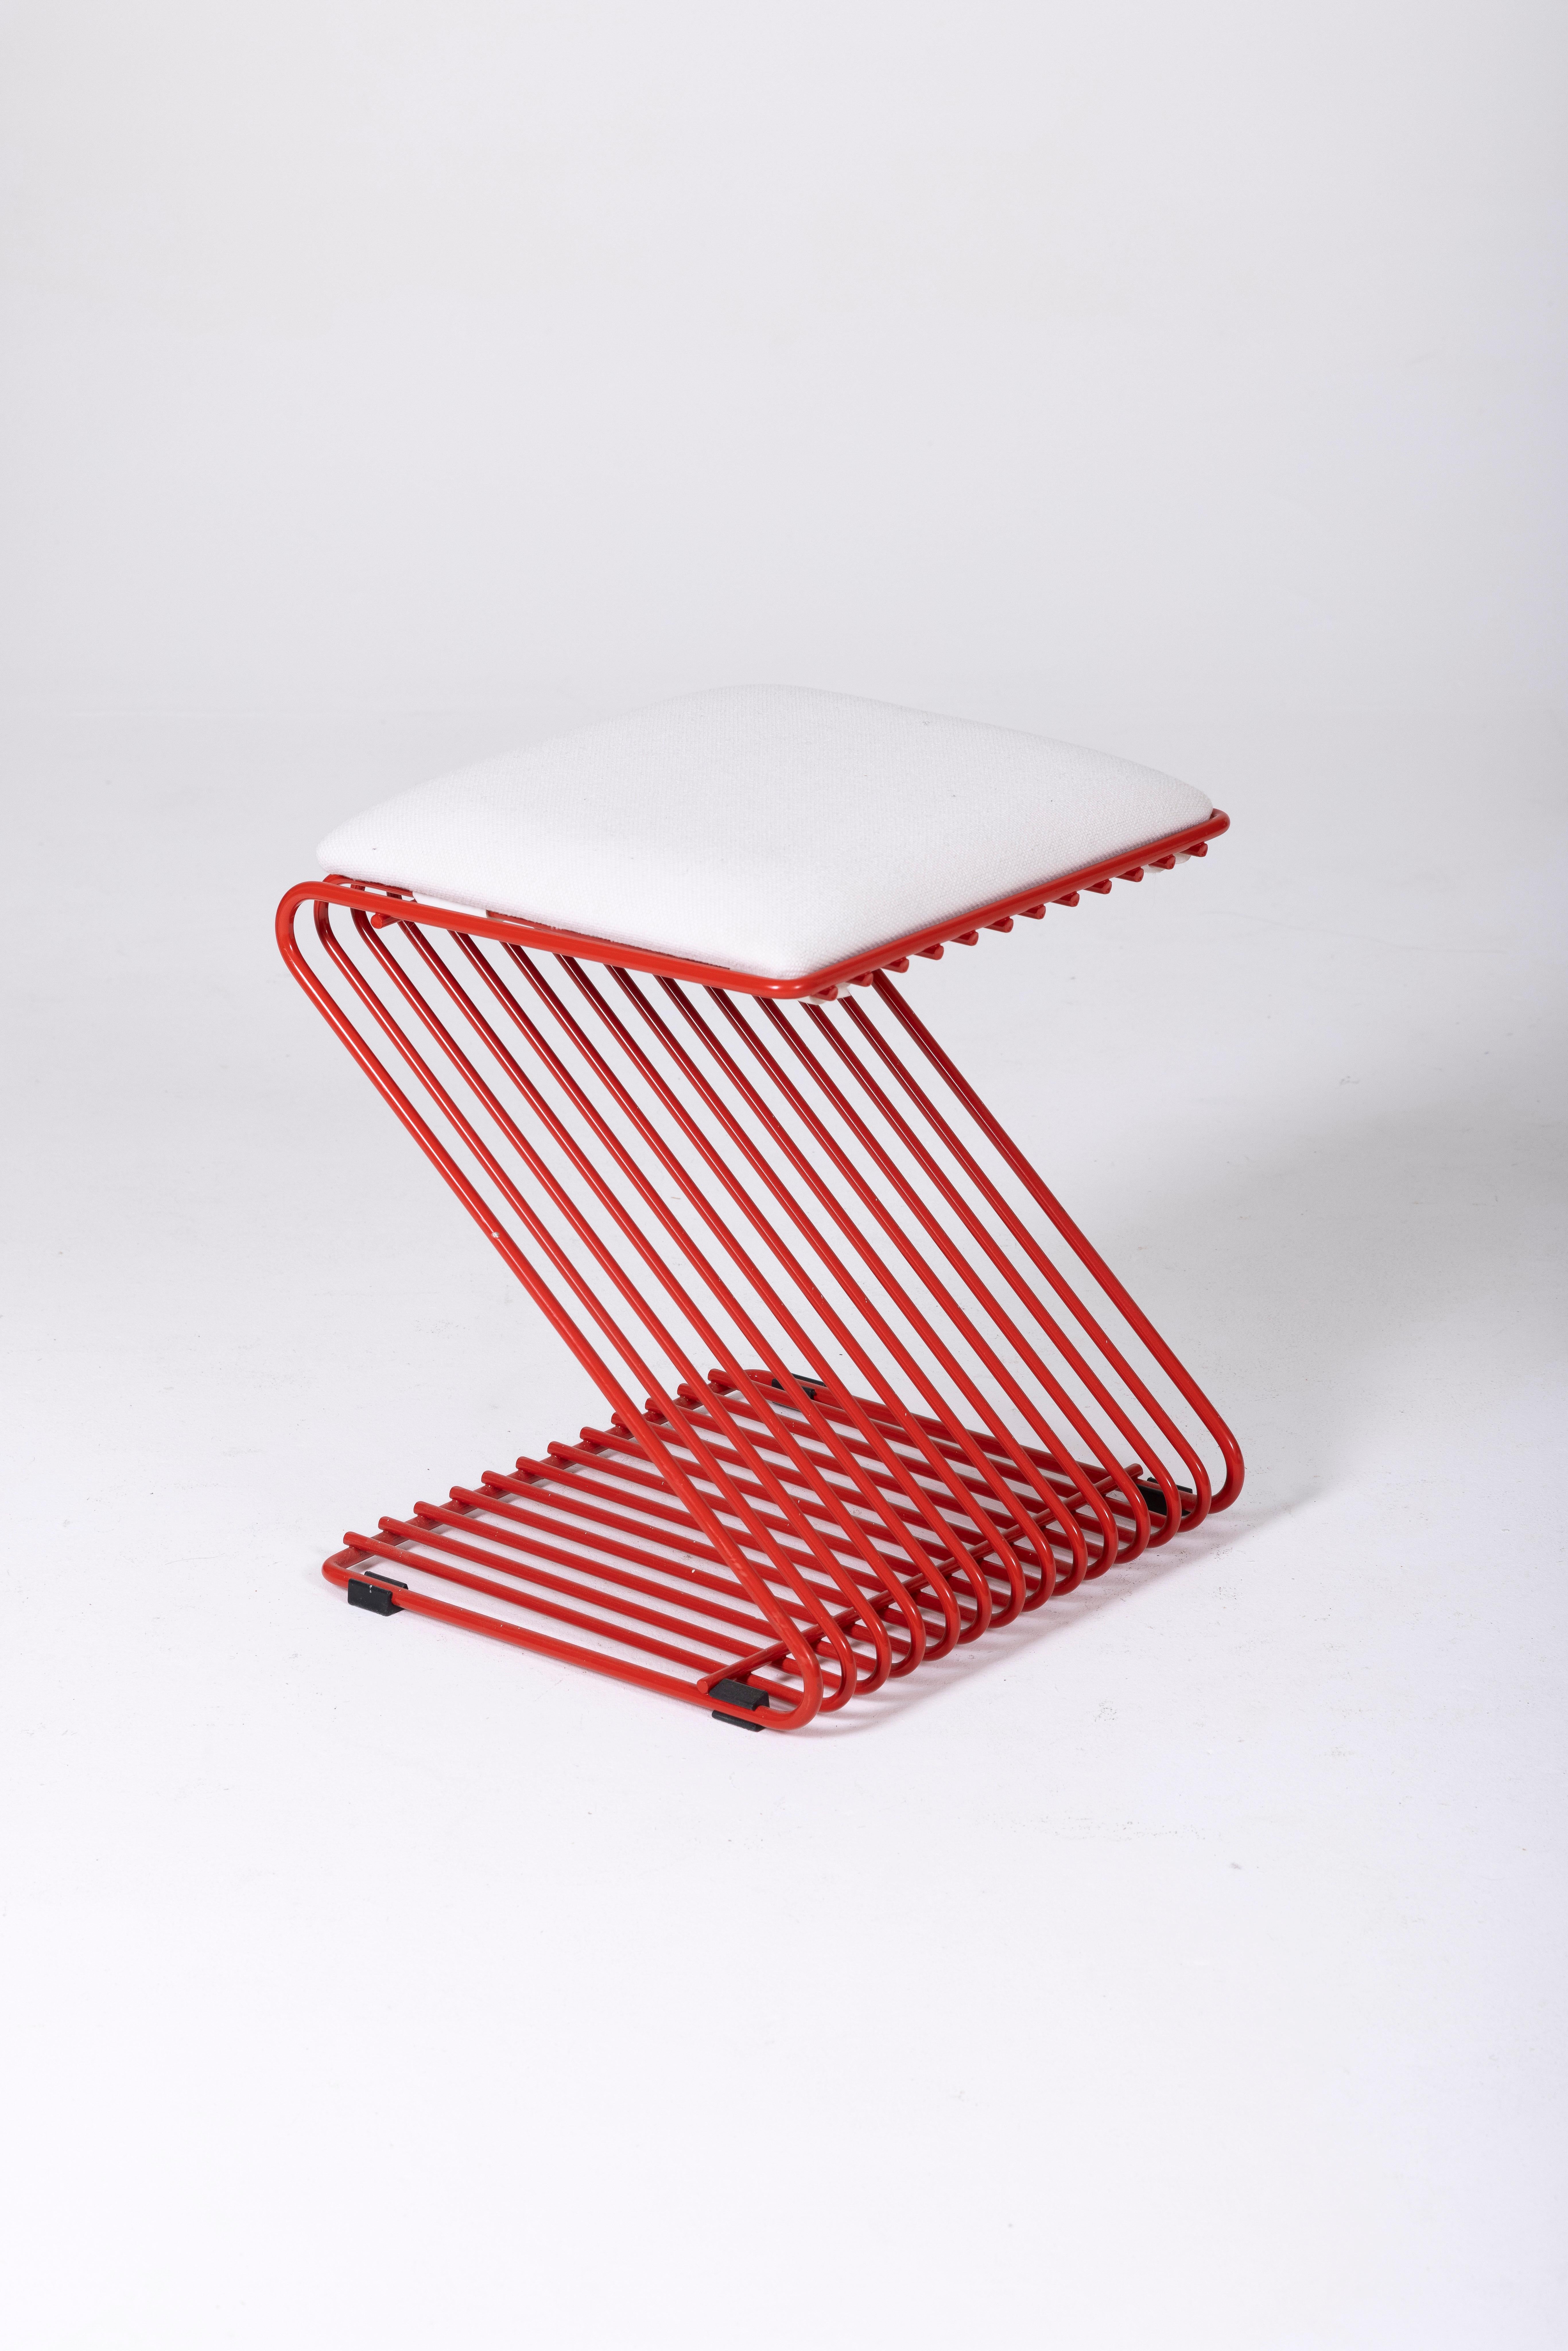 Z Stool des Designers François Arnal für Atelier A. Das Kissen ist aus weißem Stoff, die röhrenförmige Struktur aus rot lackiertem Metall. In perfektem Zustand.
DV65